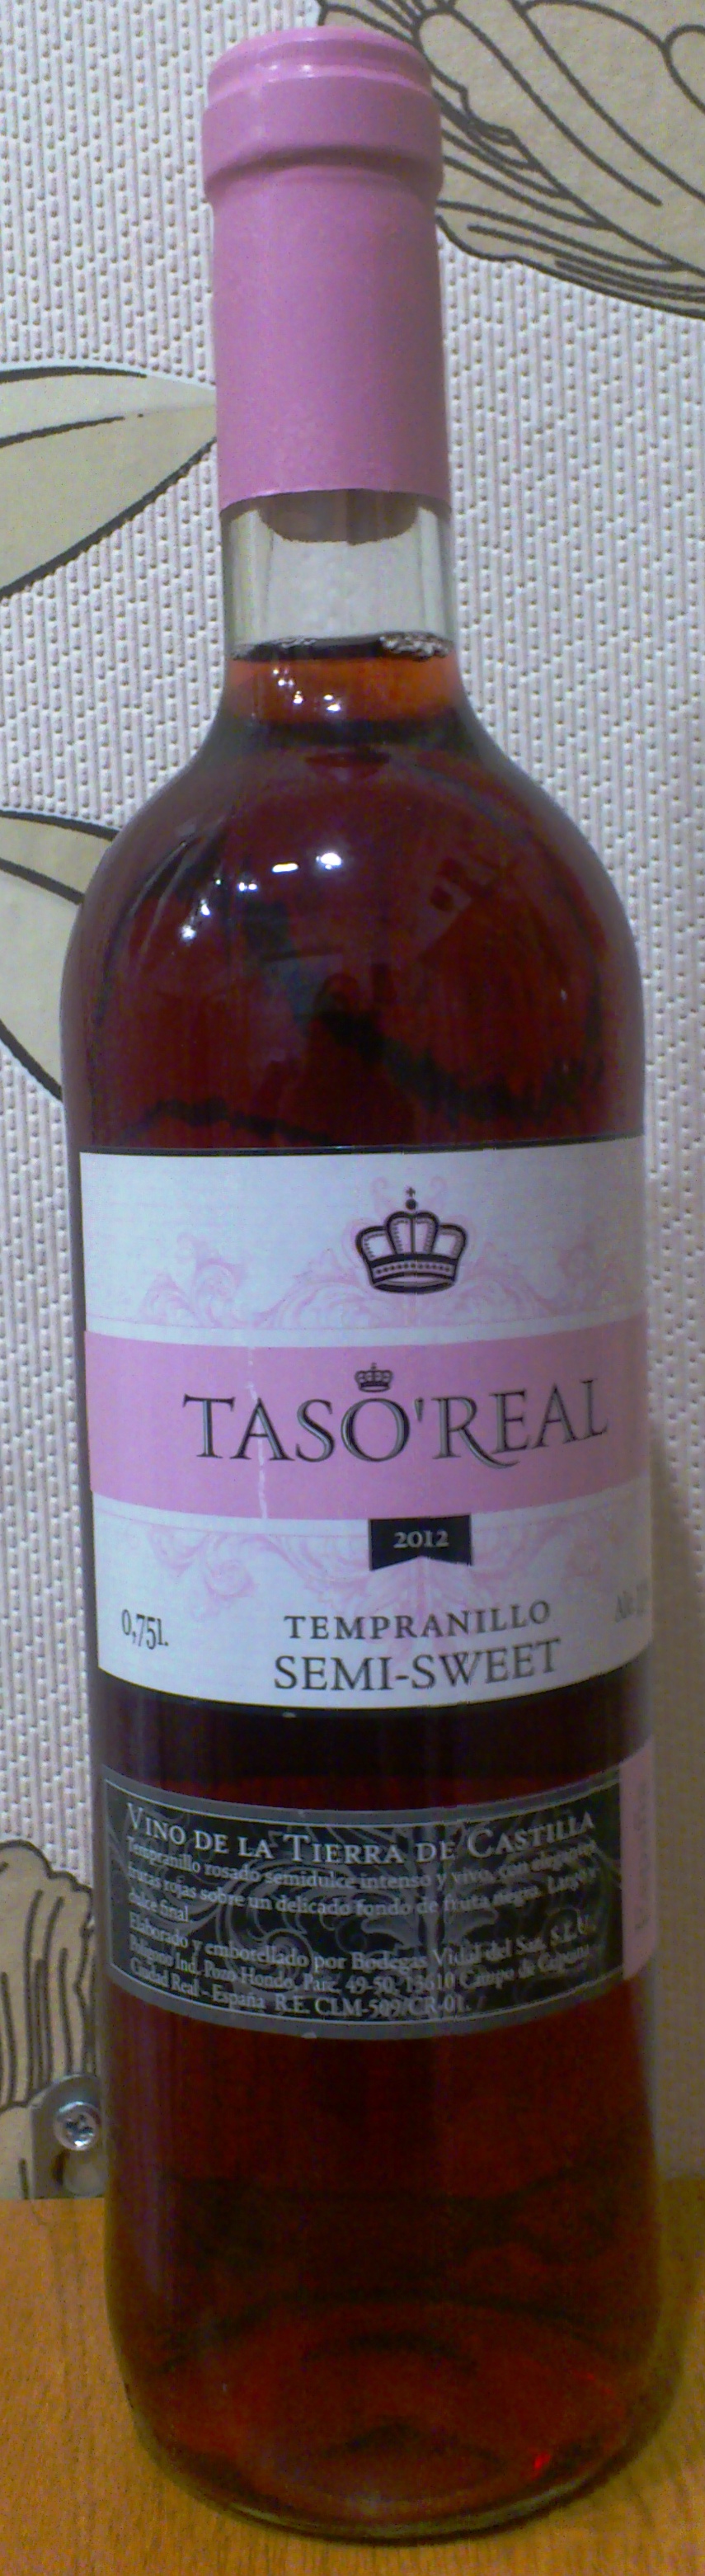 Розовые вина кб. Вино Тасо реаль Темпранийо розовое. Вино taso real розовое. Вино Тасо реаль Темпранийо розовое полусладкое 0.75л Испания. Taso real красное полусладкое.